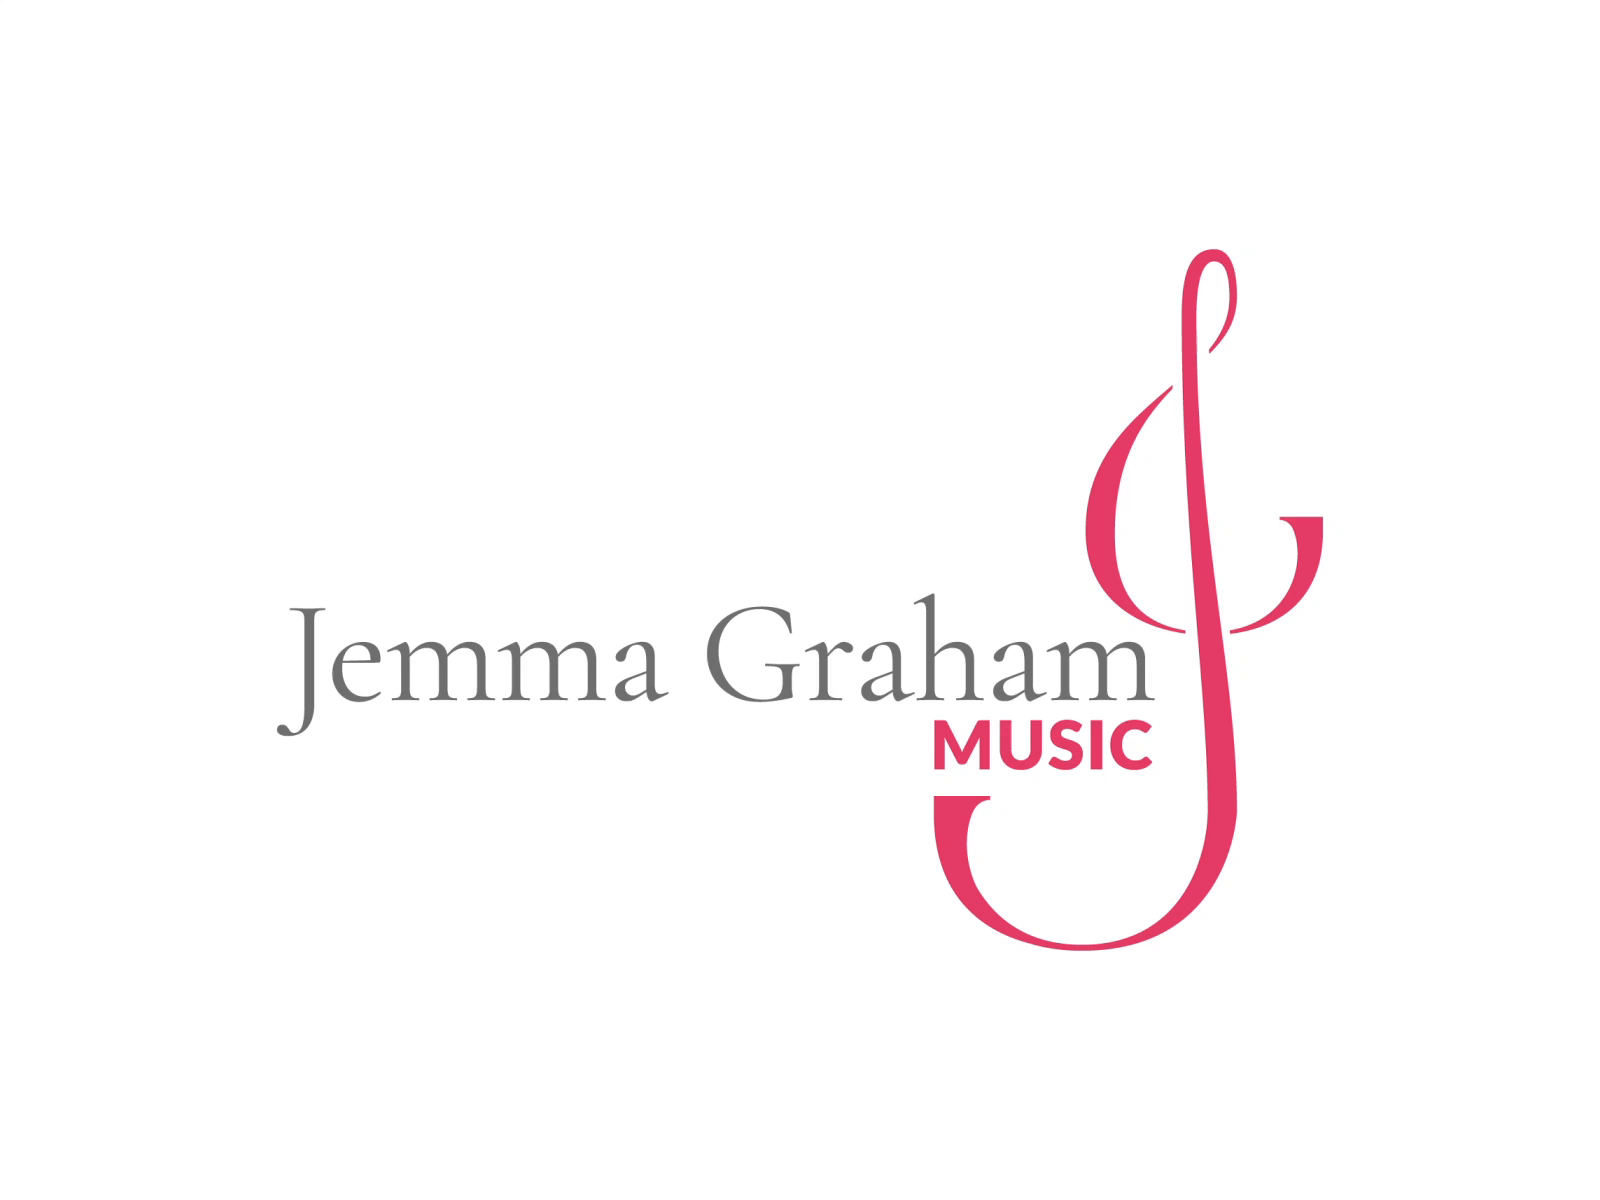 Logo design - Jemma Graham Music by Ben Stickings on Dribbble